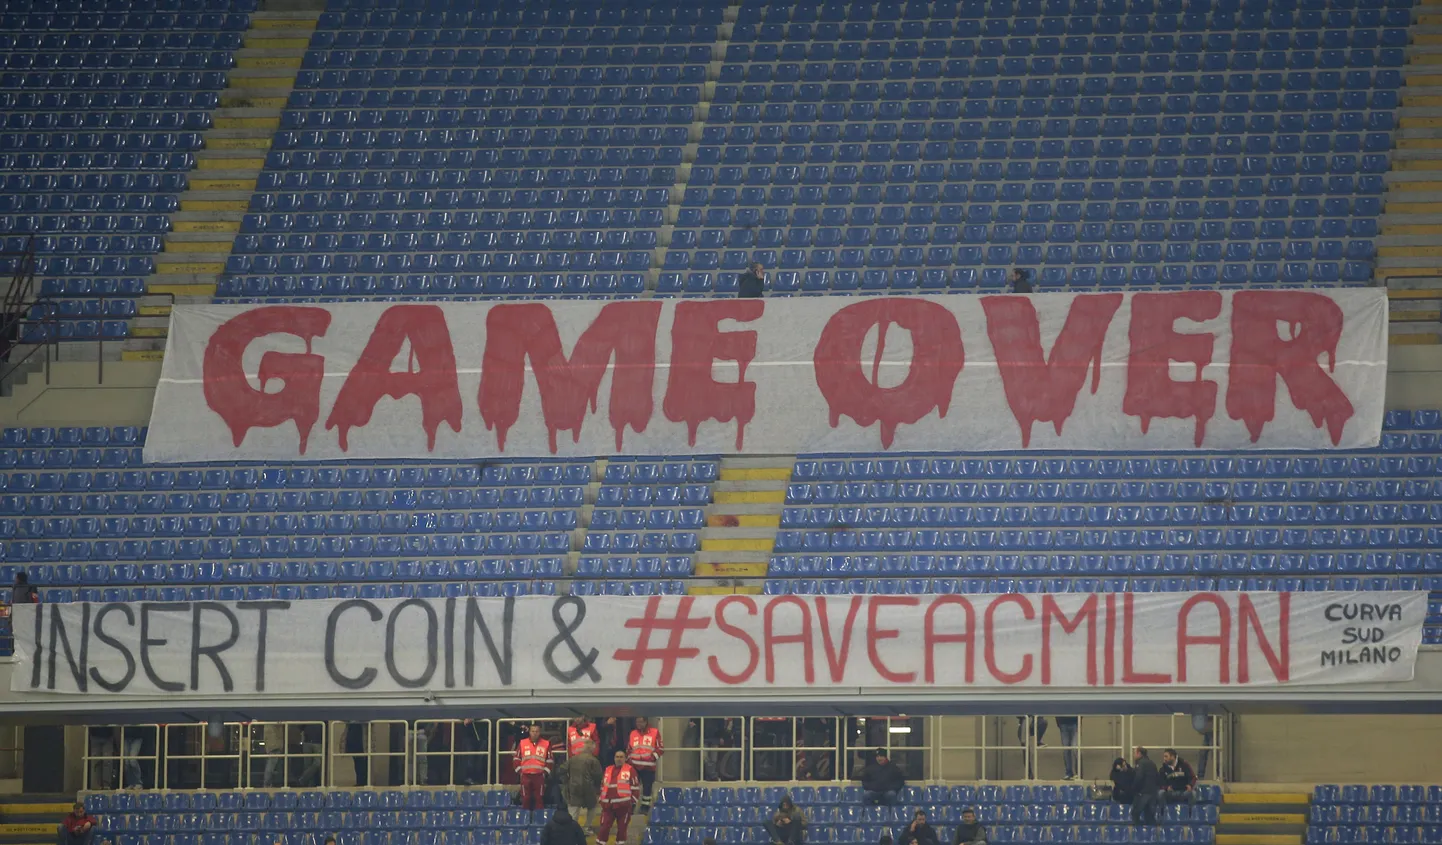 Недовольные болельщики "Кальяри" покинули стадион и ставили баннер во время матча против "Милана" (21.03).